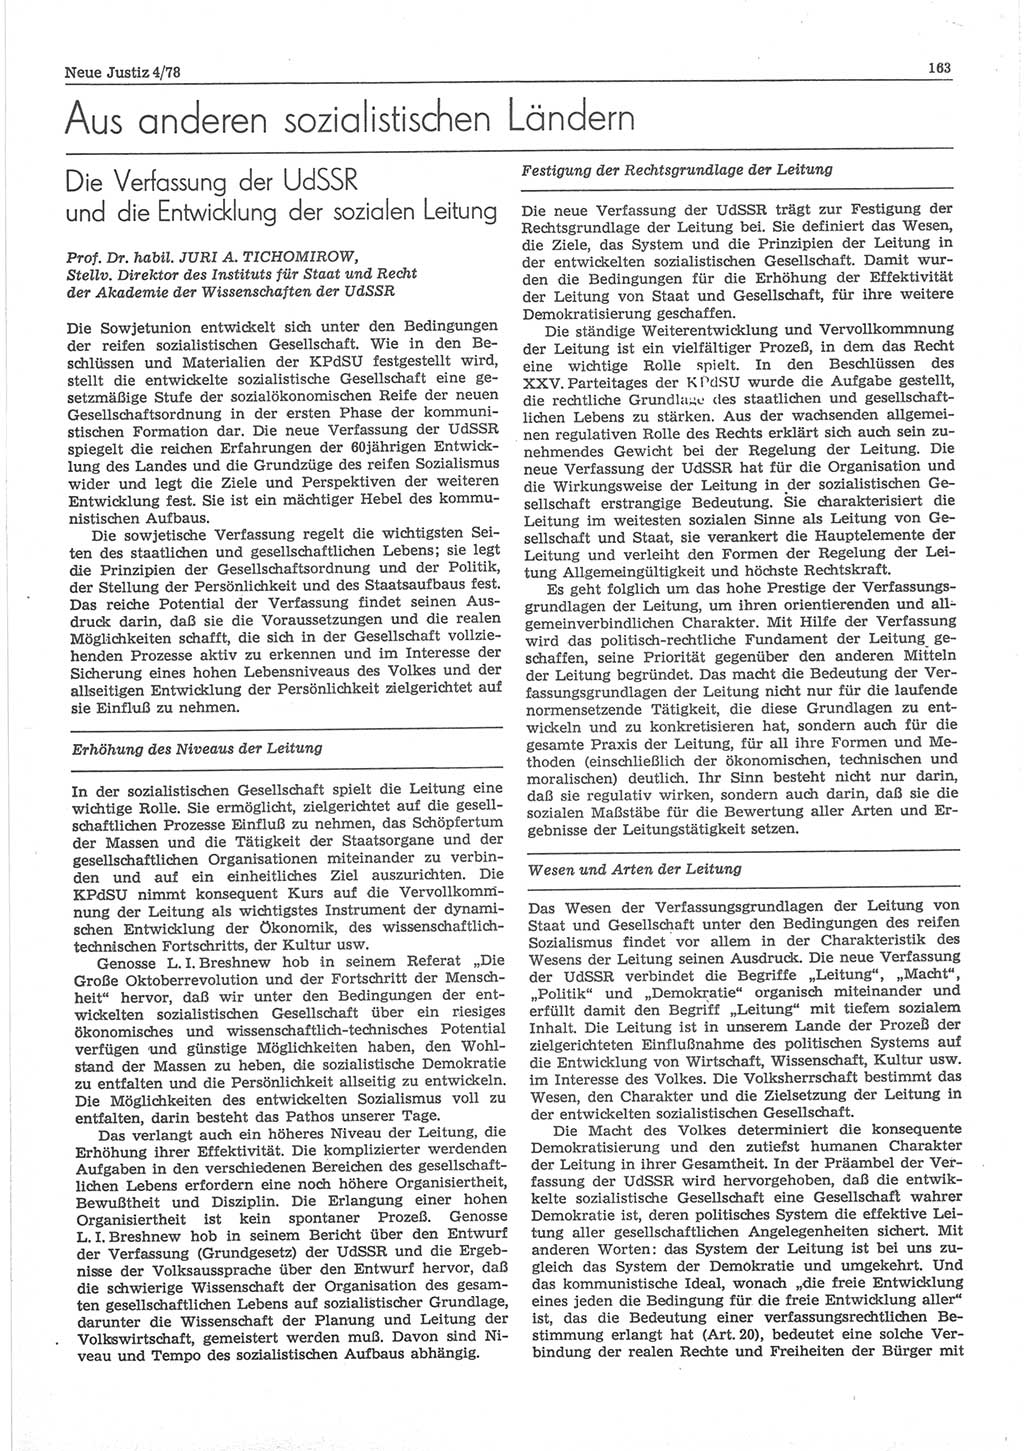 Neue Justiz (NJ), Zeitschrift für sozialistisches Recht und Gesetzlichkeit [Deutsche Demokratische Republik (DDR)], 32. Jahrgang 1978, Seite 163 (NJ DDR 1978, S. 163)